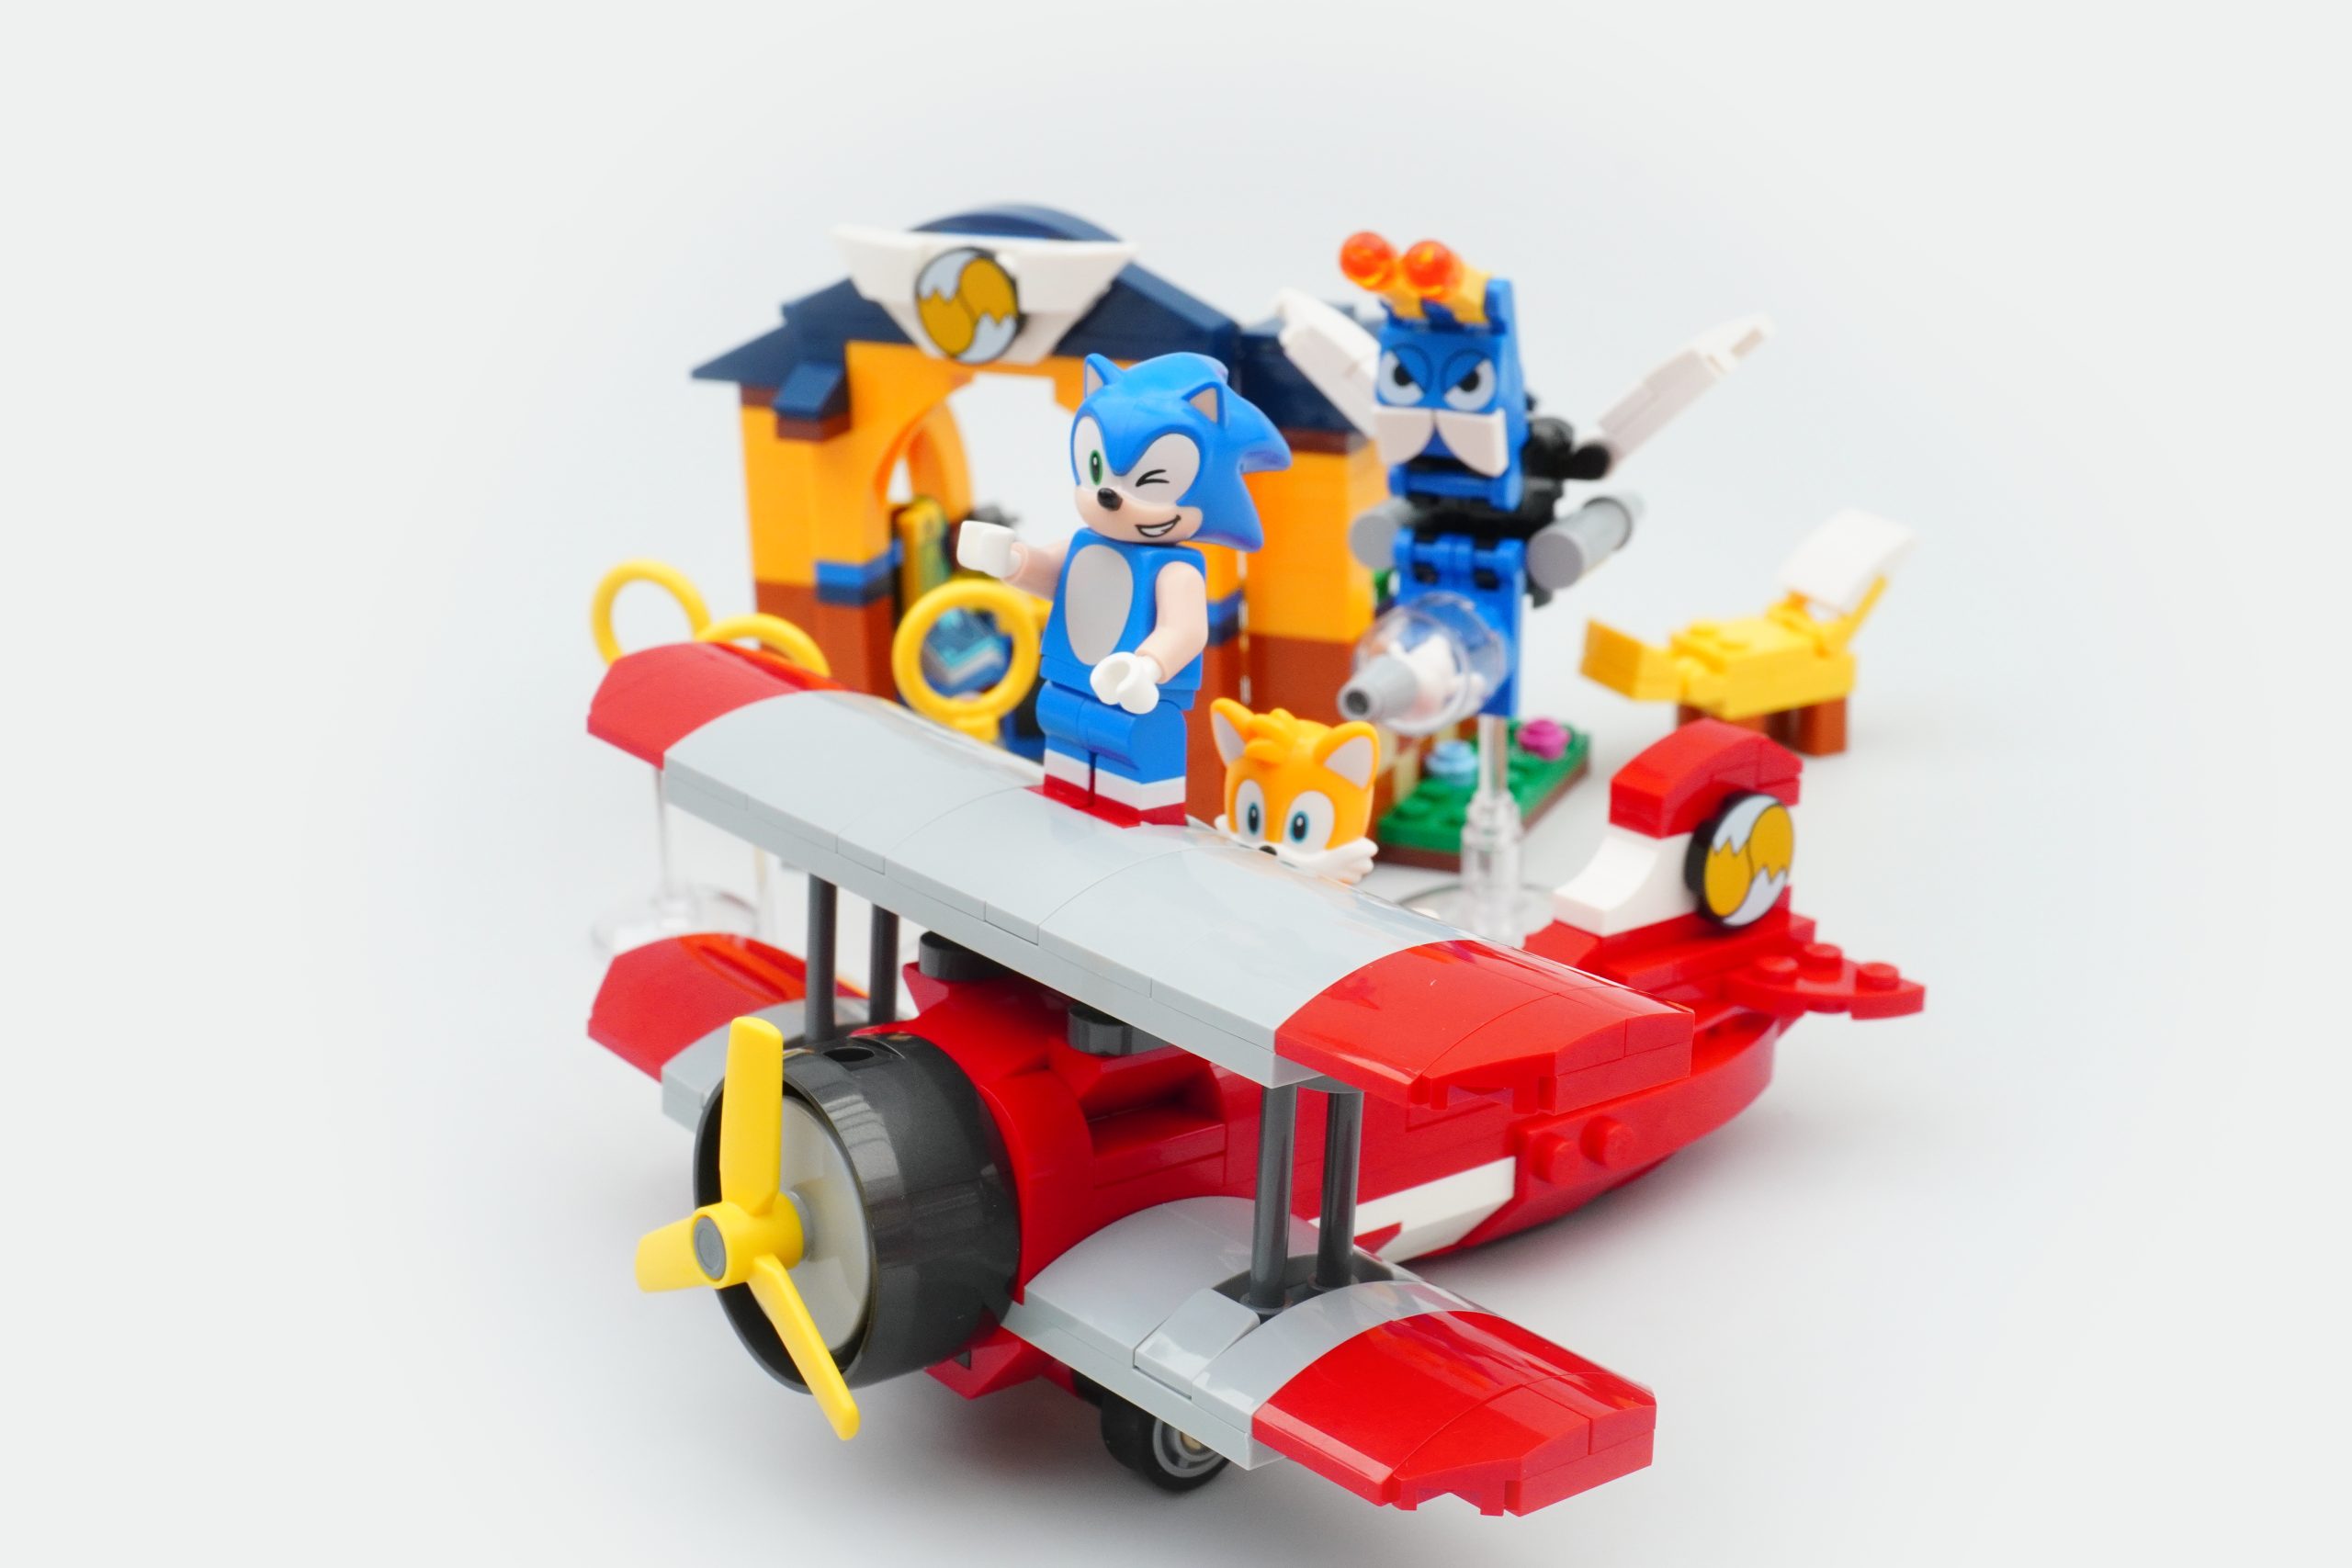 LEGO Sonic the Hedgehog - Avião Tornado e Oficina de Tails - 76991, LEGO  OUTRAS LINHAS